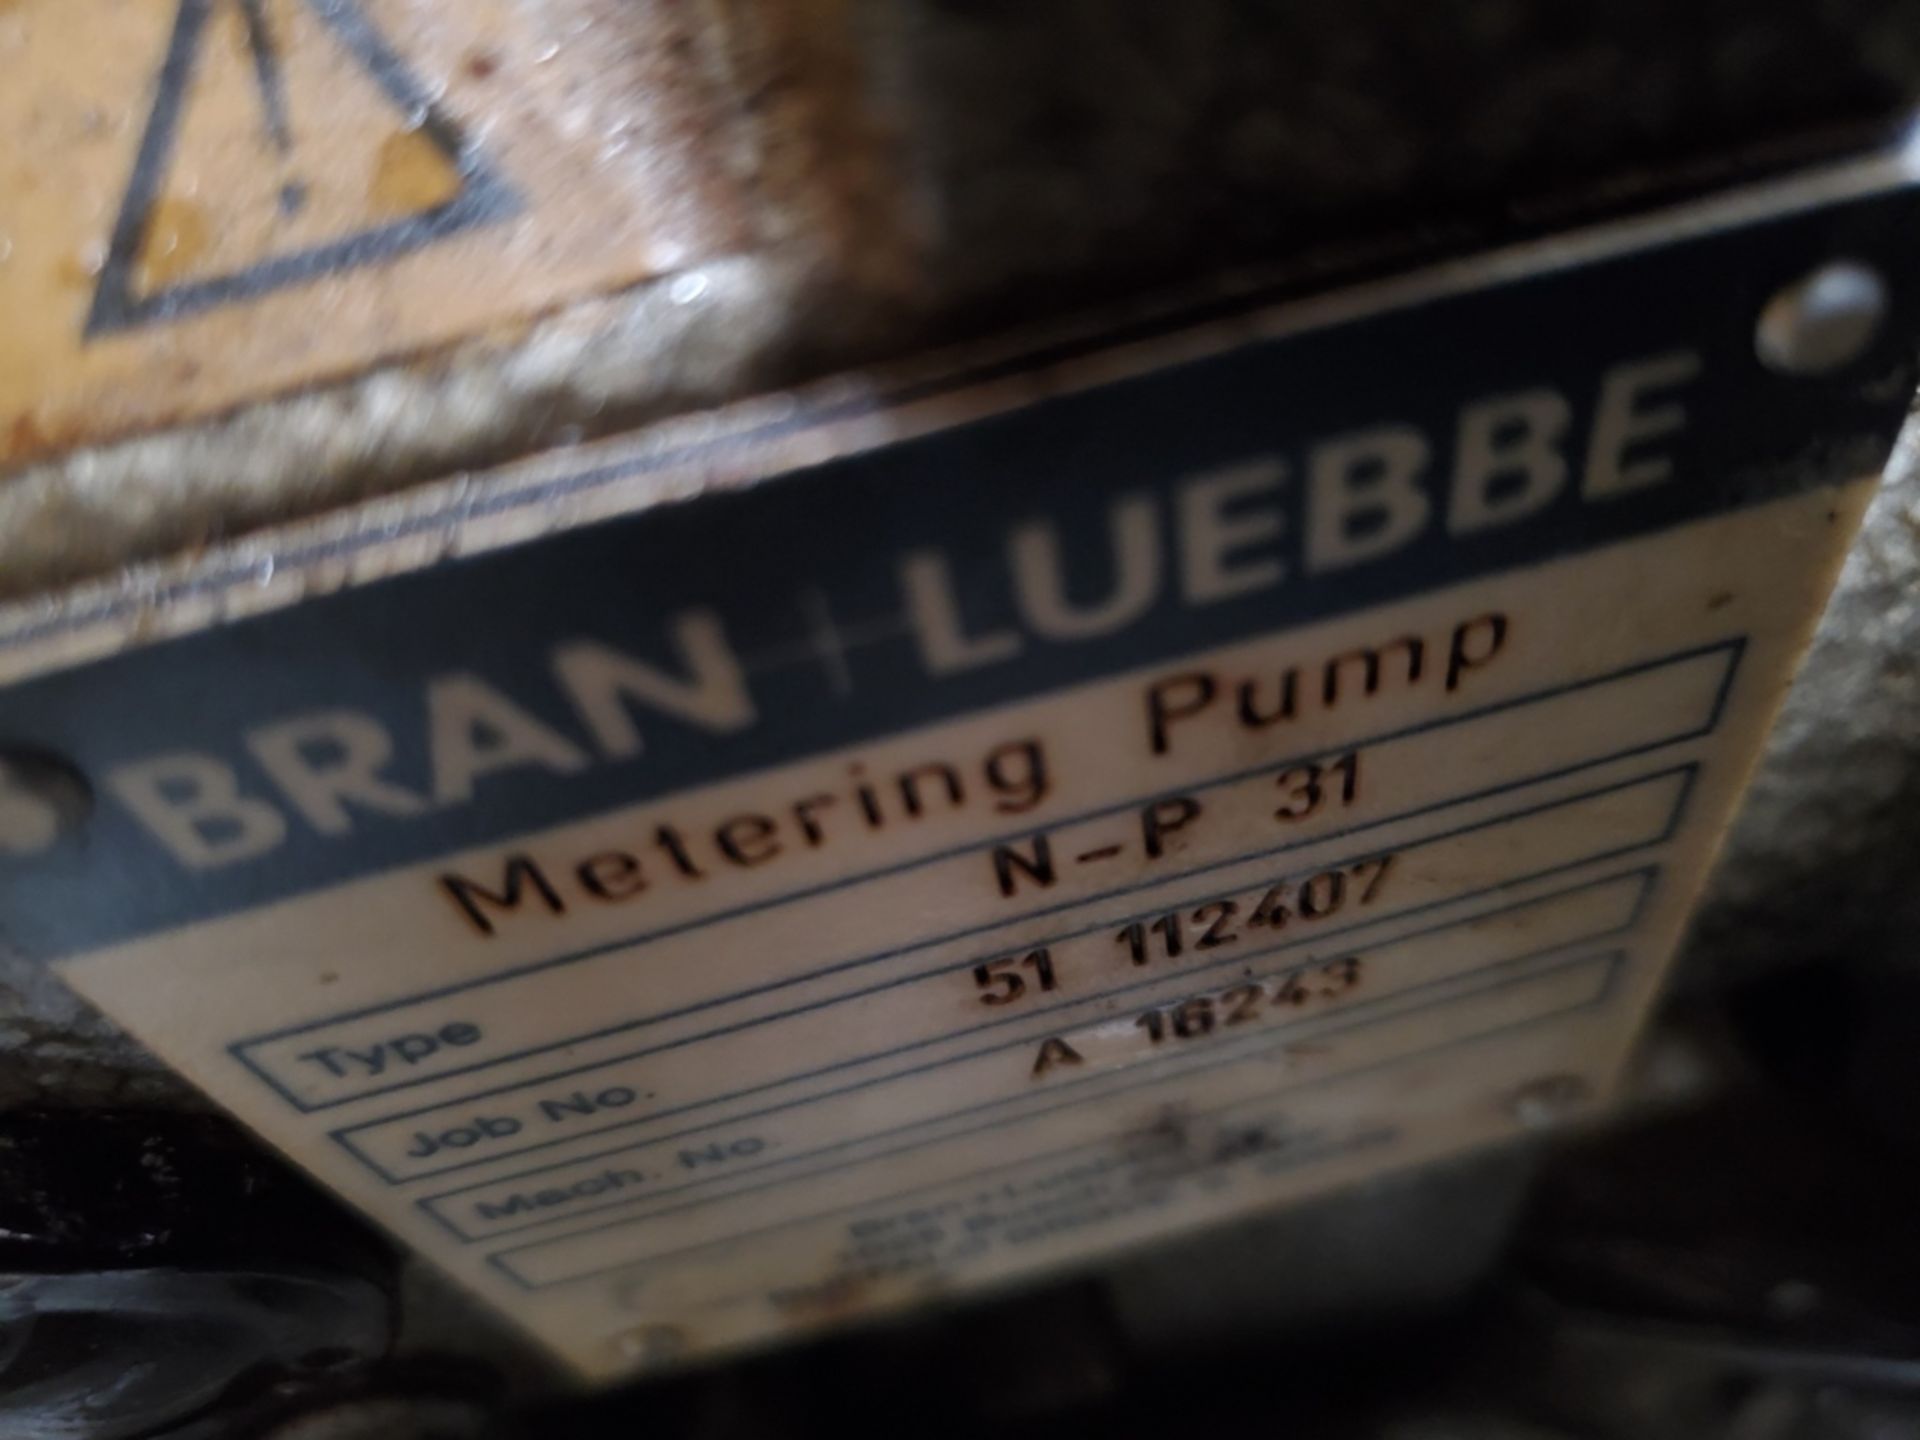 Bran Luebbe Model N-P 31 Metering Pump - Image 5 of 6